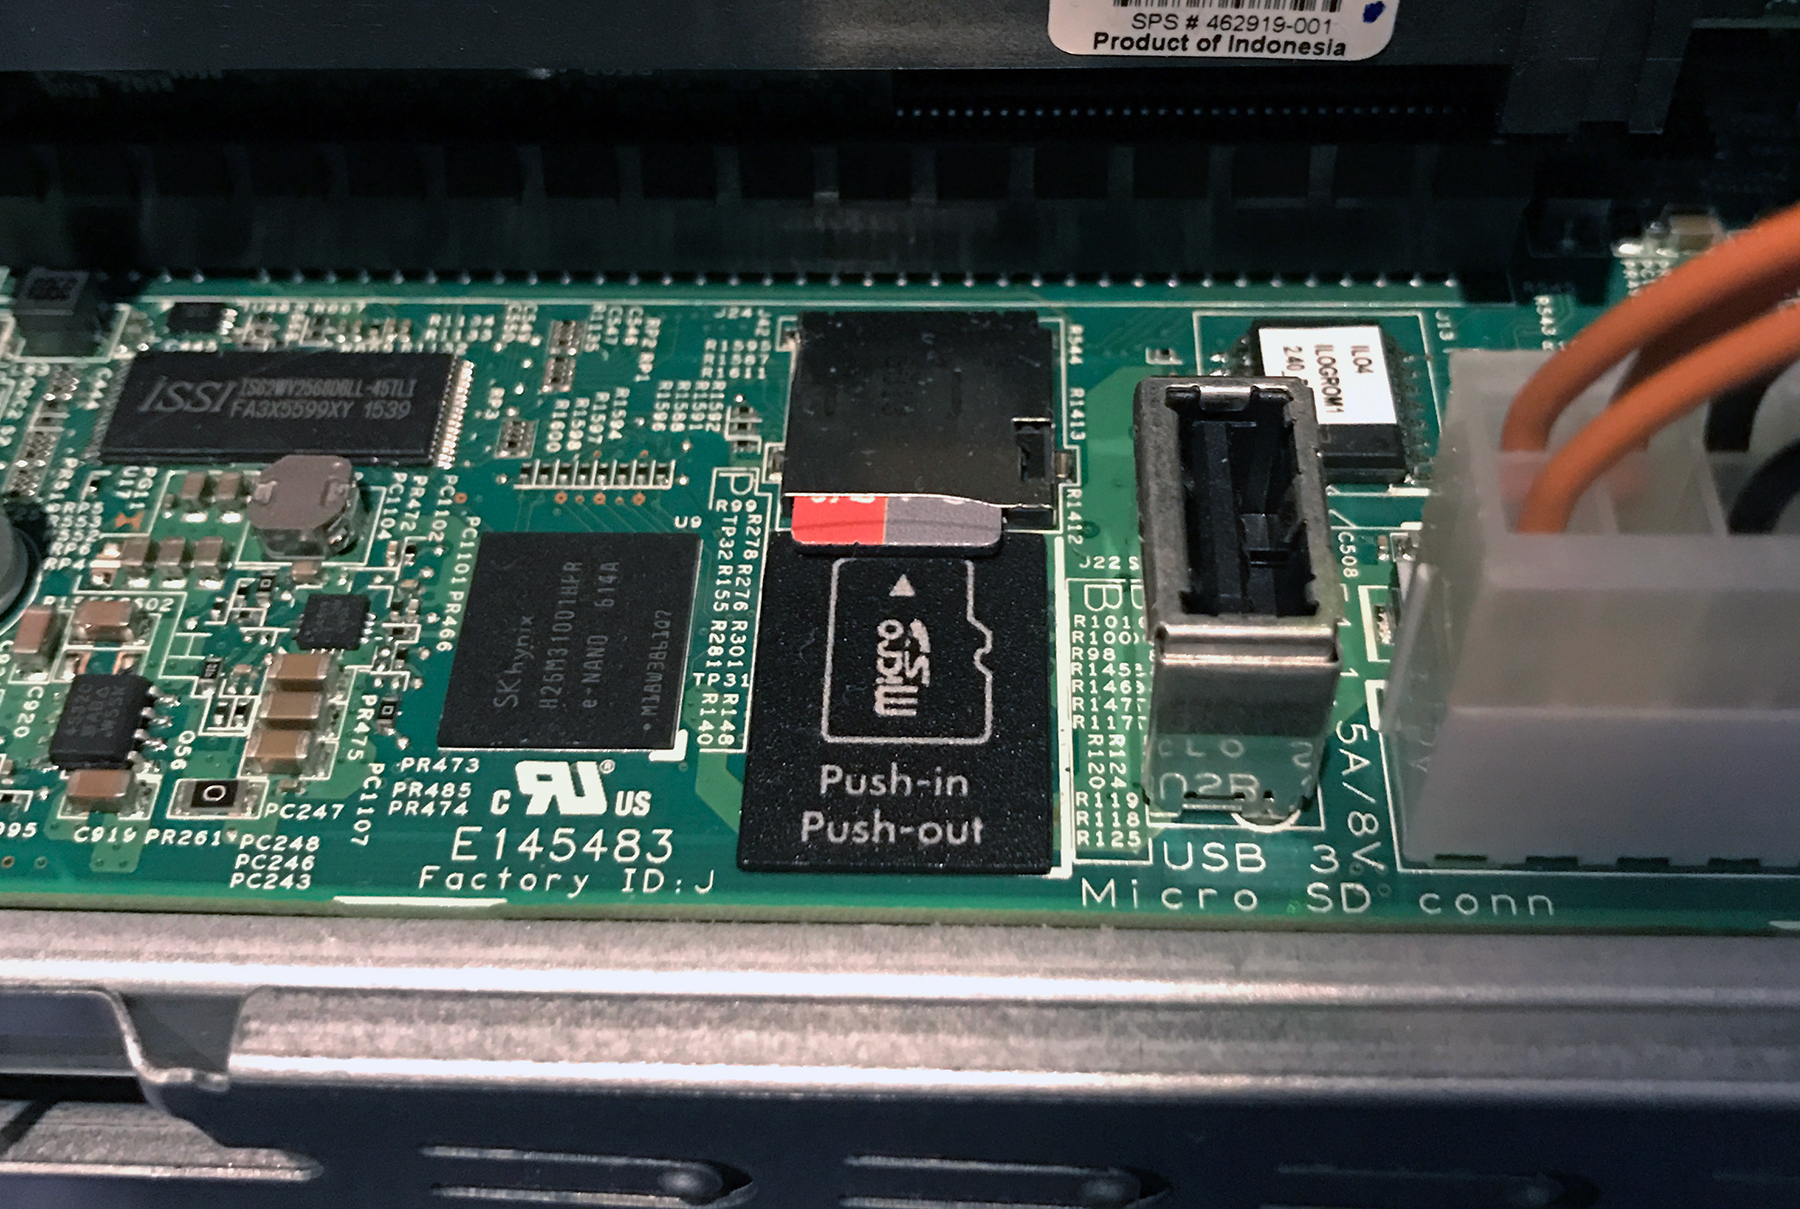 microSD slot on the Gen8 Microserver